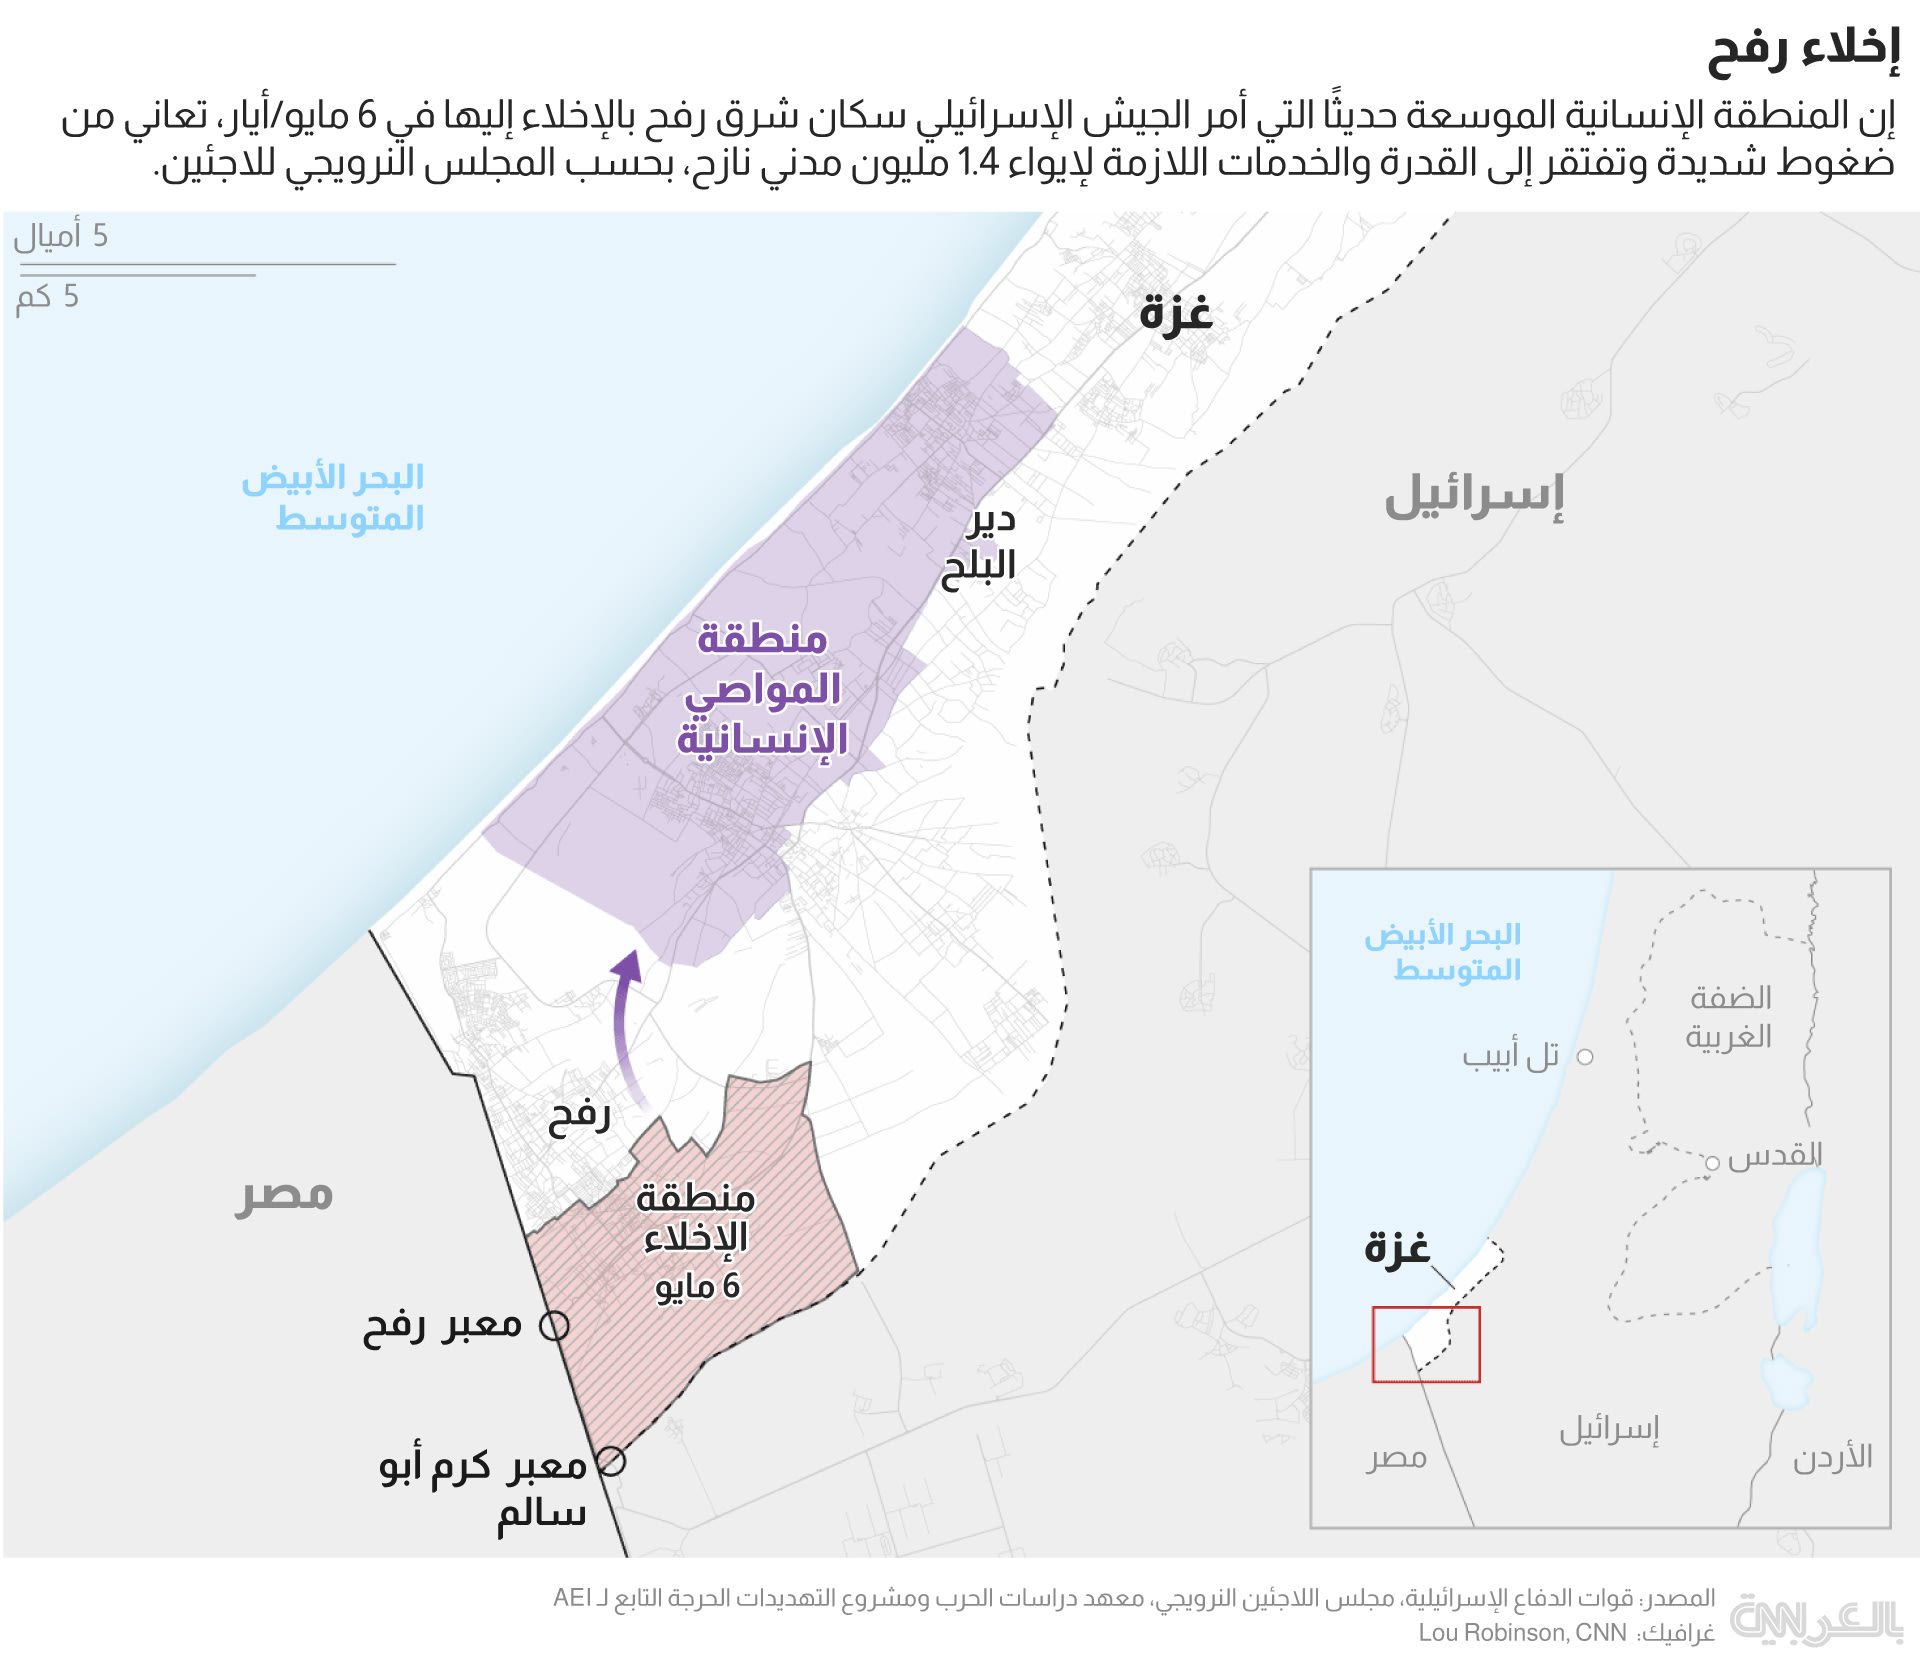 Gaza evacuation map